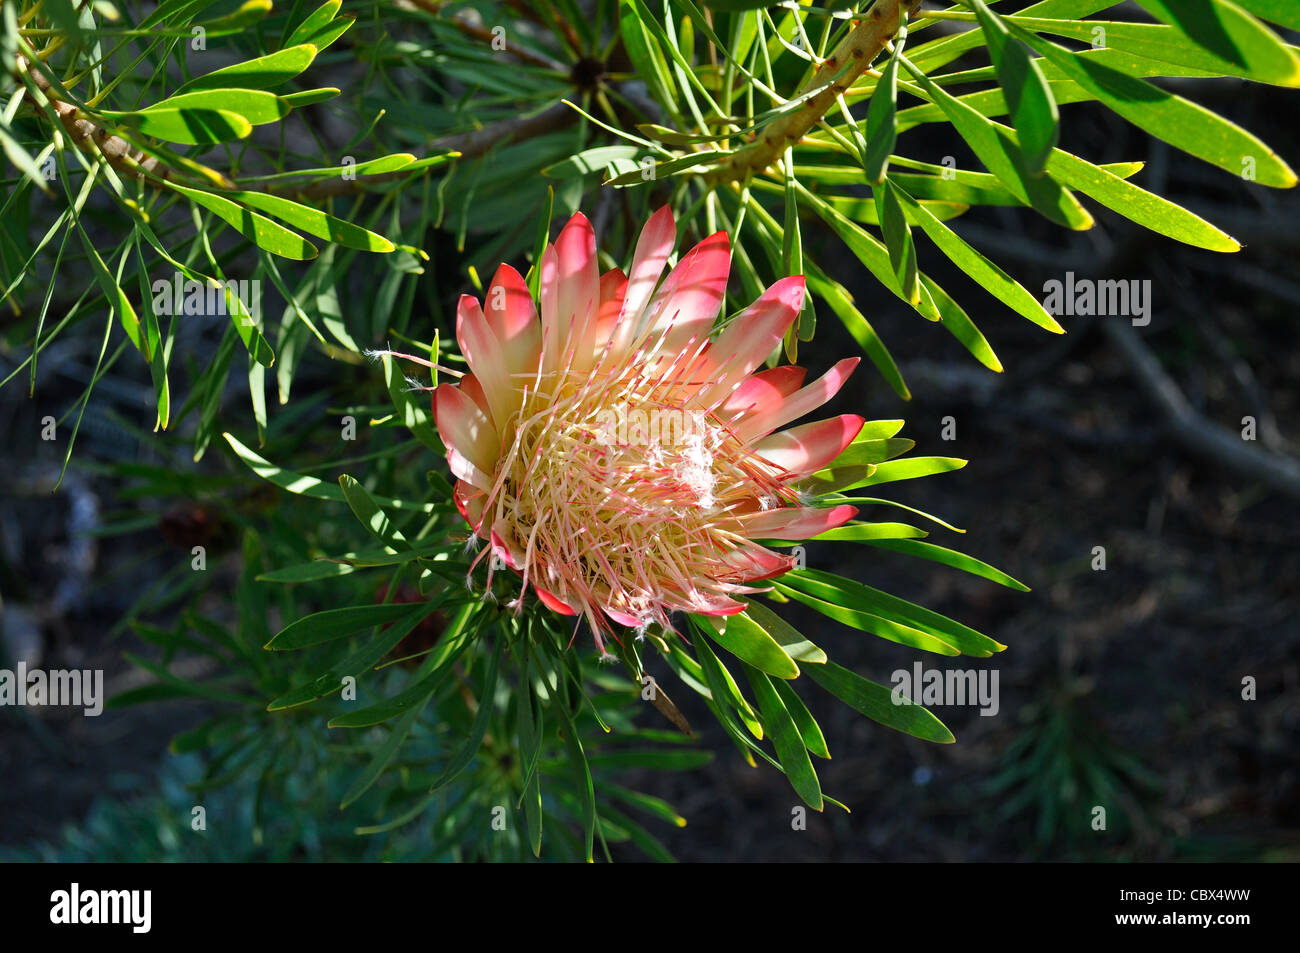 Common sugarbush, Protea repens, blossom Stock Photo